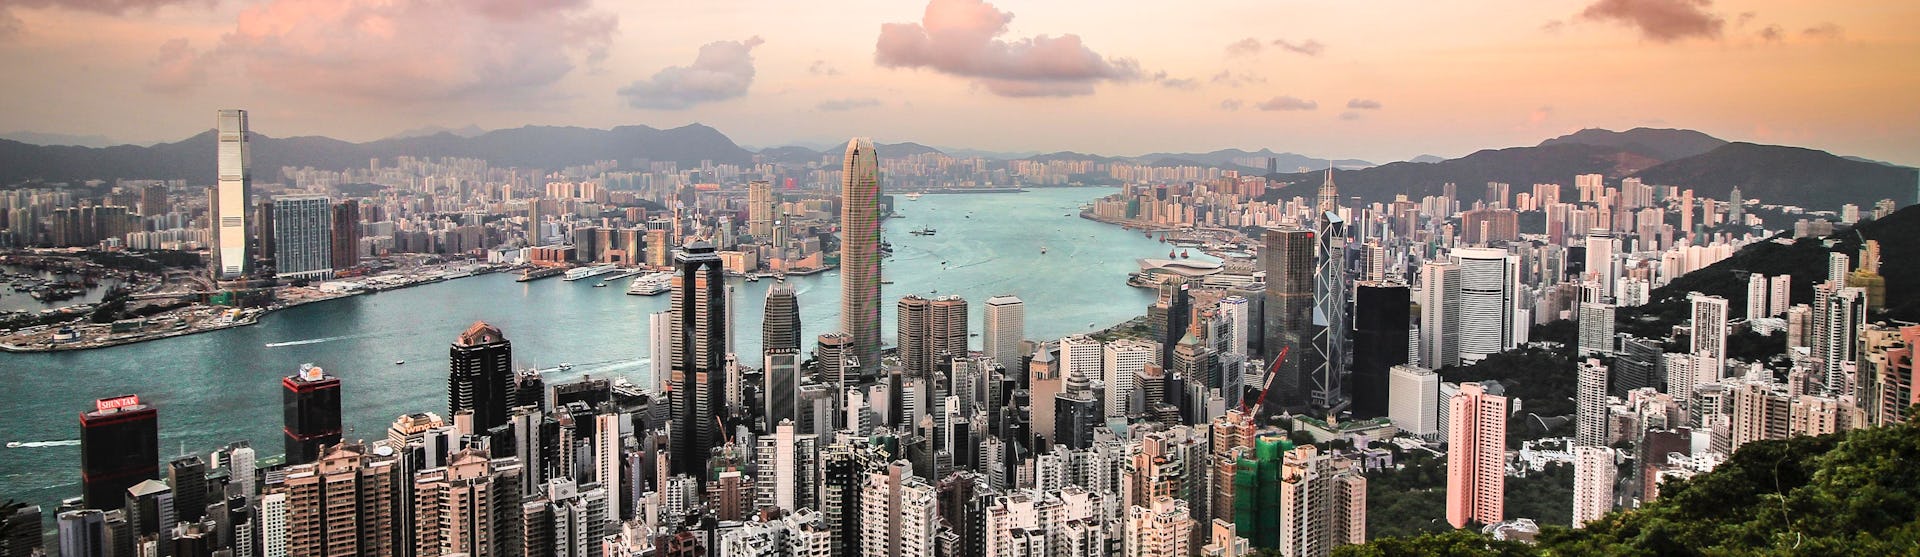 Bild på Victoria Harbour i Hong Kong tagen från luften med havet som skär mellan höghusen.